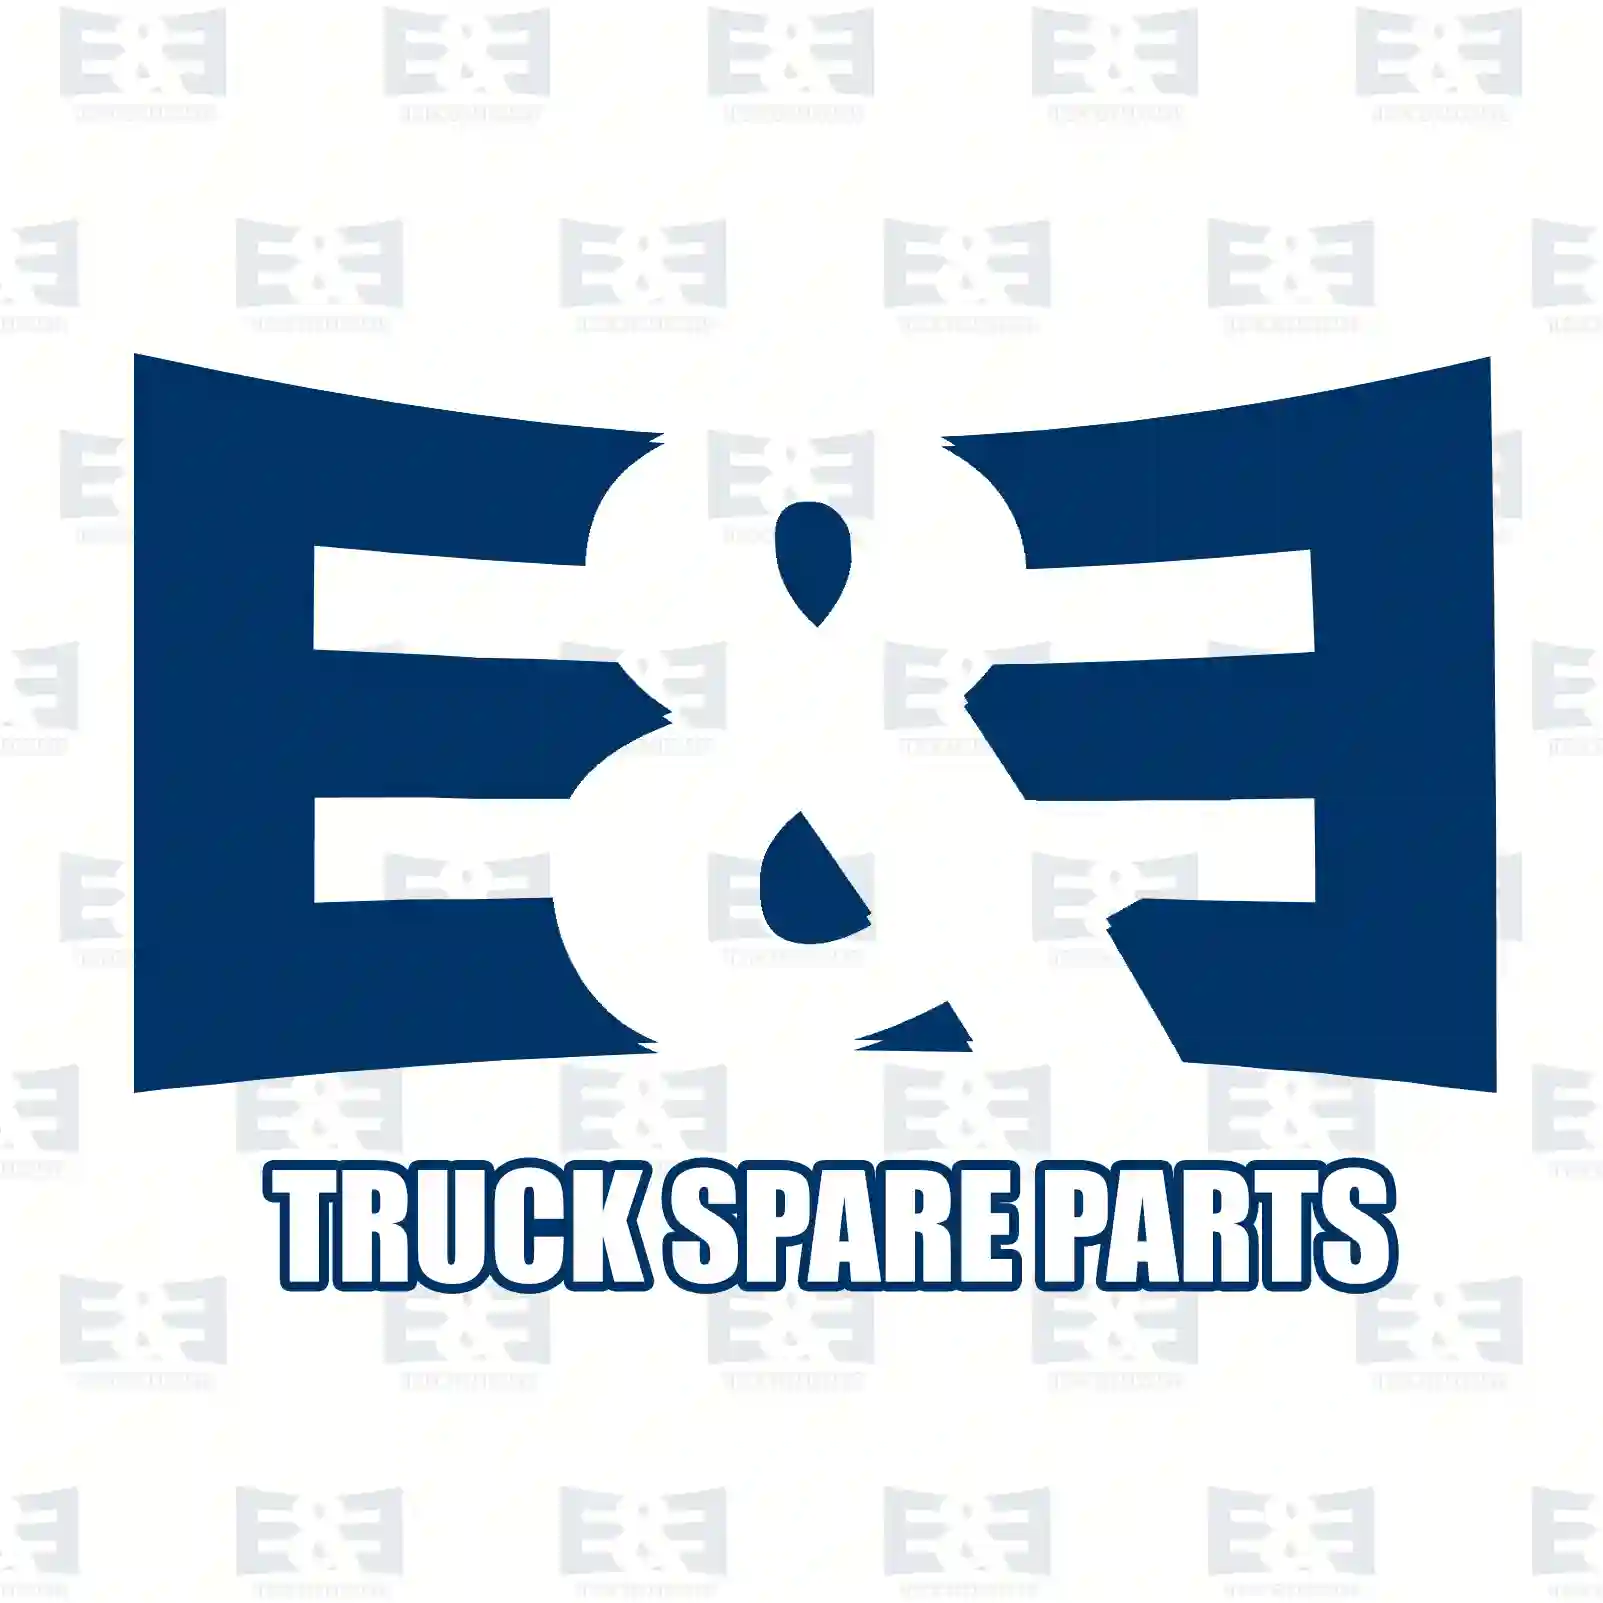 V-belt, 2E2286448, 4663950, 02235177, 91073828, 91082710, 19111-590-0601, 02068059, 007753009519, 7701029710, 90916-02285, 958326, 966931, 977387, ZG02341-0008 ||  2E2286448 E&E Truck Spare Parts | Truck Spare Parts, Auotomotive Spare Parts V-belt, 2E2286448, 4663950, 02235177, 91073828, 91082710, 19111-590-0601, 02068059, 007753009519, 7701029710, 90916-02285, 958326, 966931, 977387, ZG02341-0008 ||  2E2286448 E&E Truck Spare Parts | Truck Spare Parts, Auotomotive Spare Parts